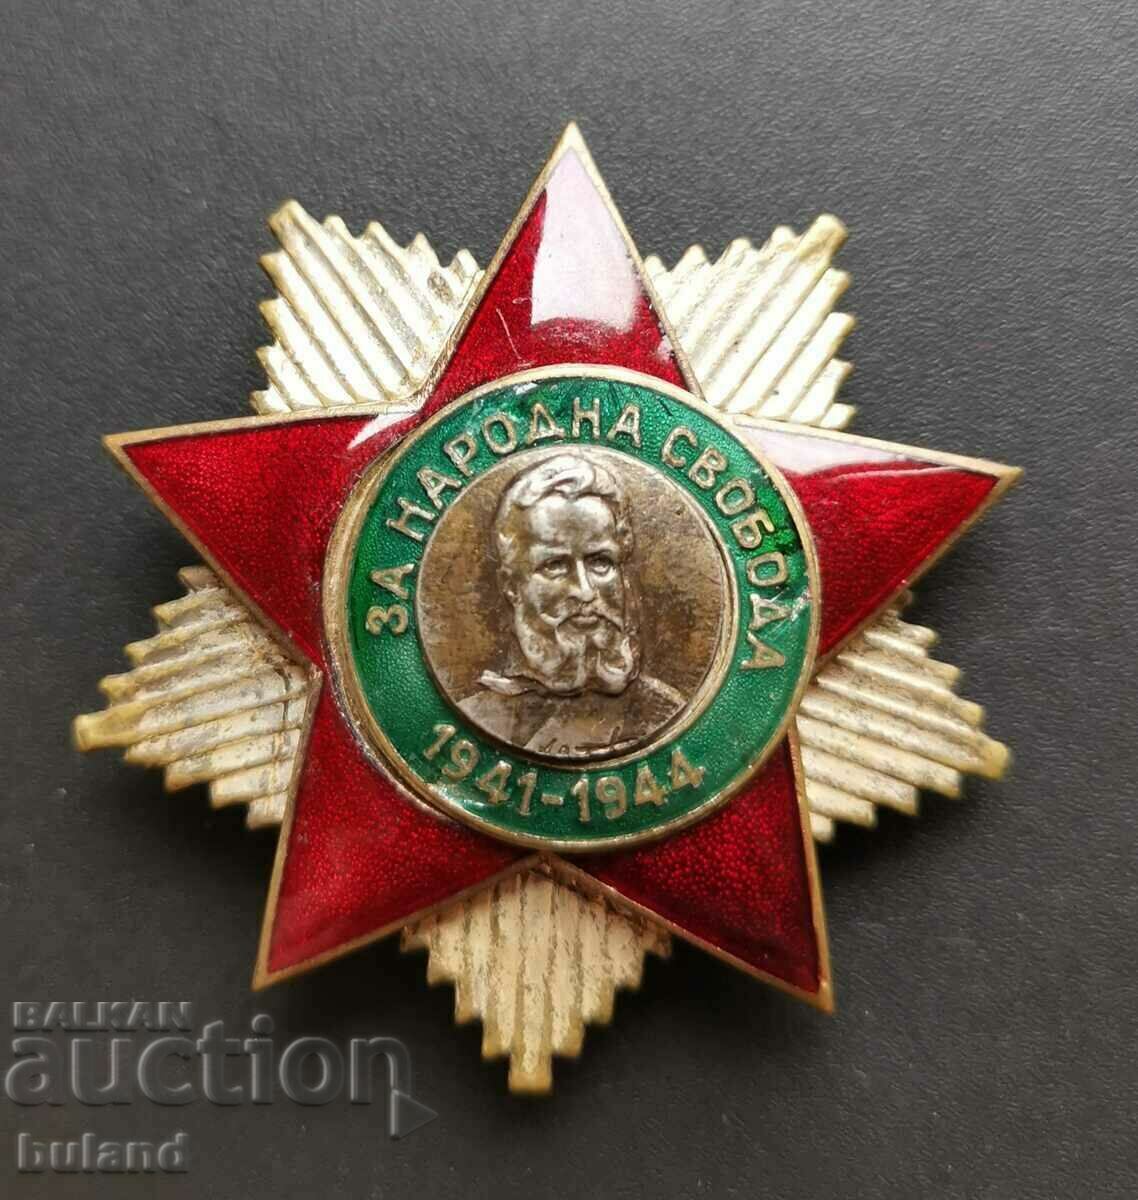 Български Соц Орден Народна Свобода 2-ра ст. на Винт Ботев